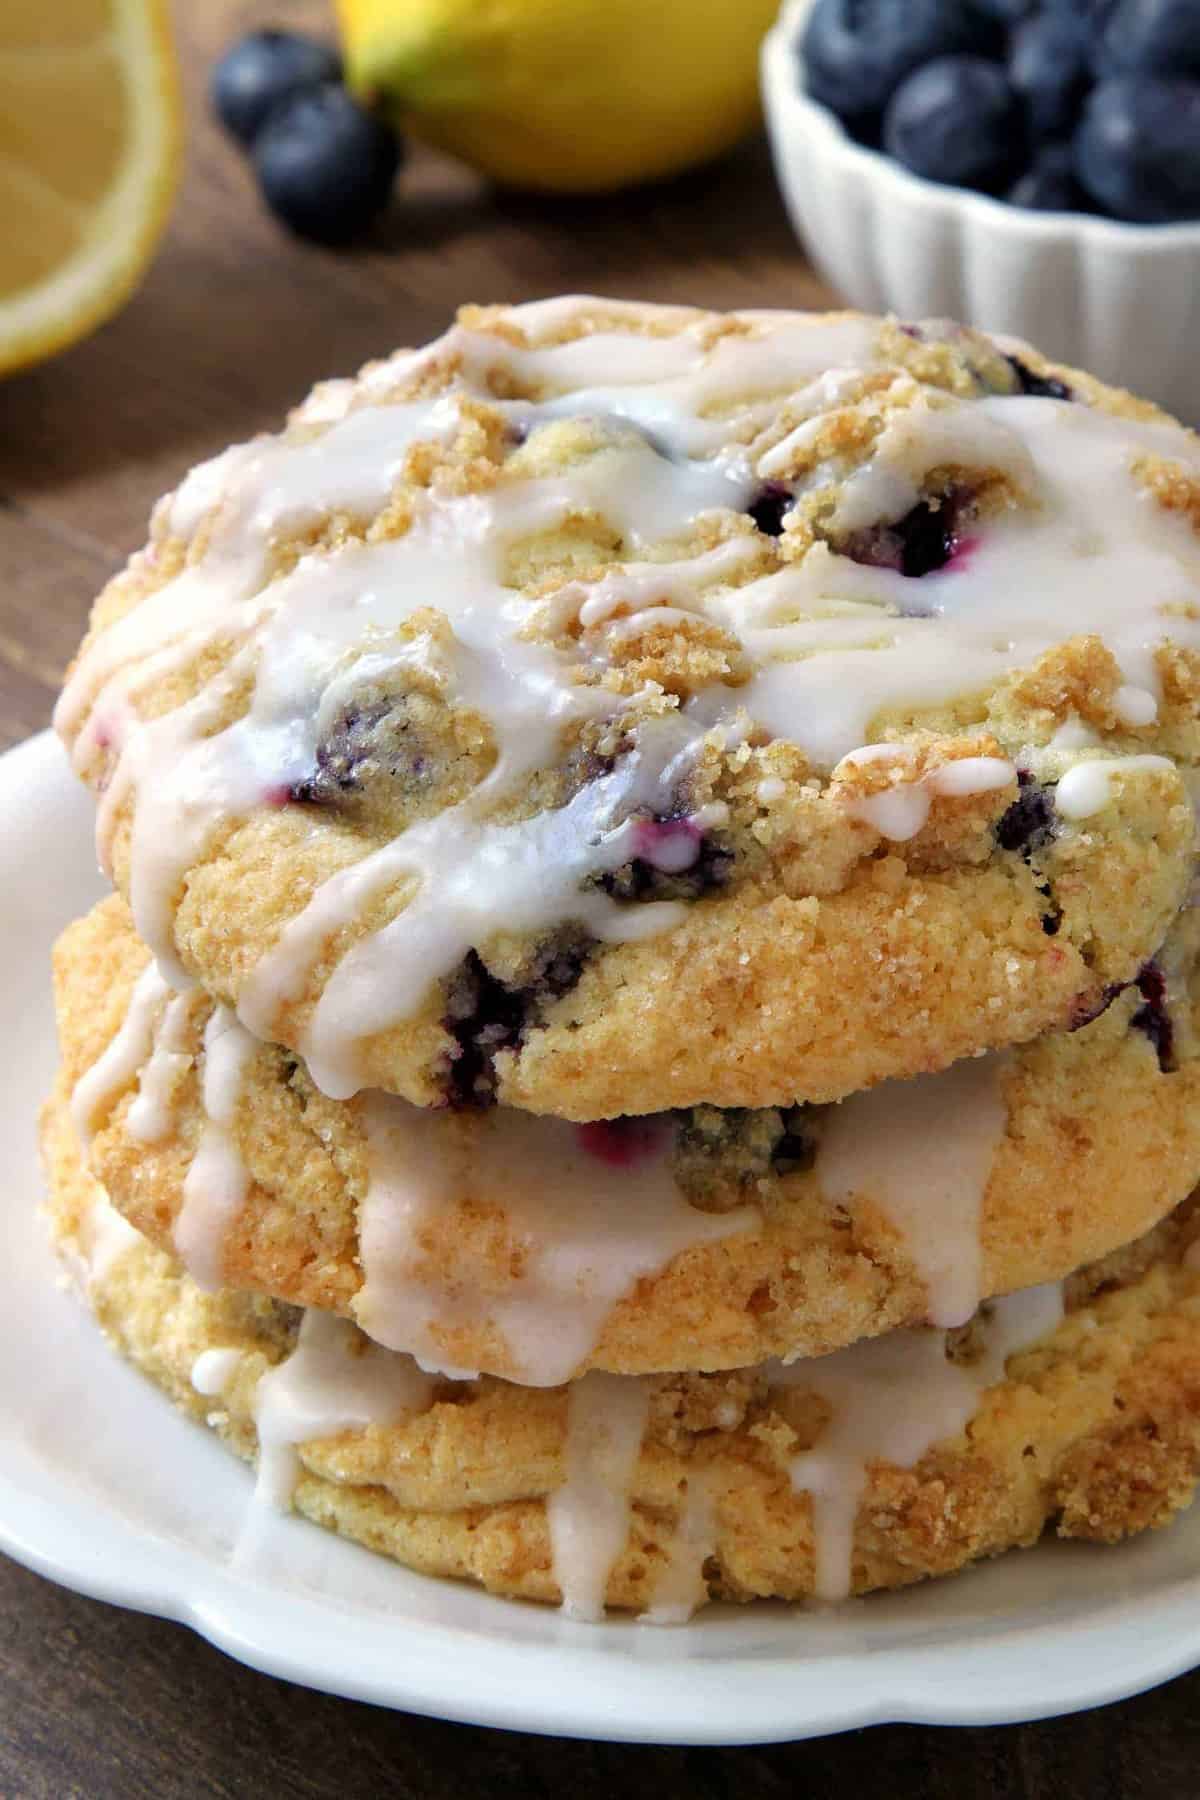 https://www.mybakingaddiction.com/wp-content/uploads/2016/07/blueberry-muffin-top-cookies-1-1500-2.jpg